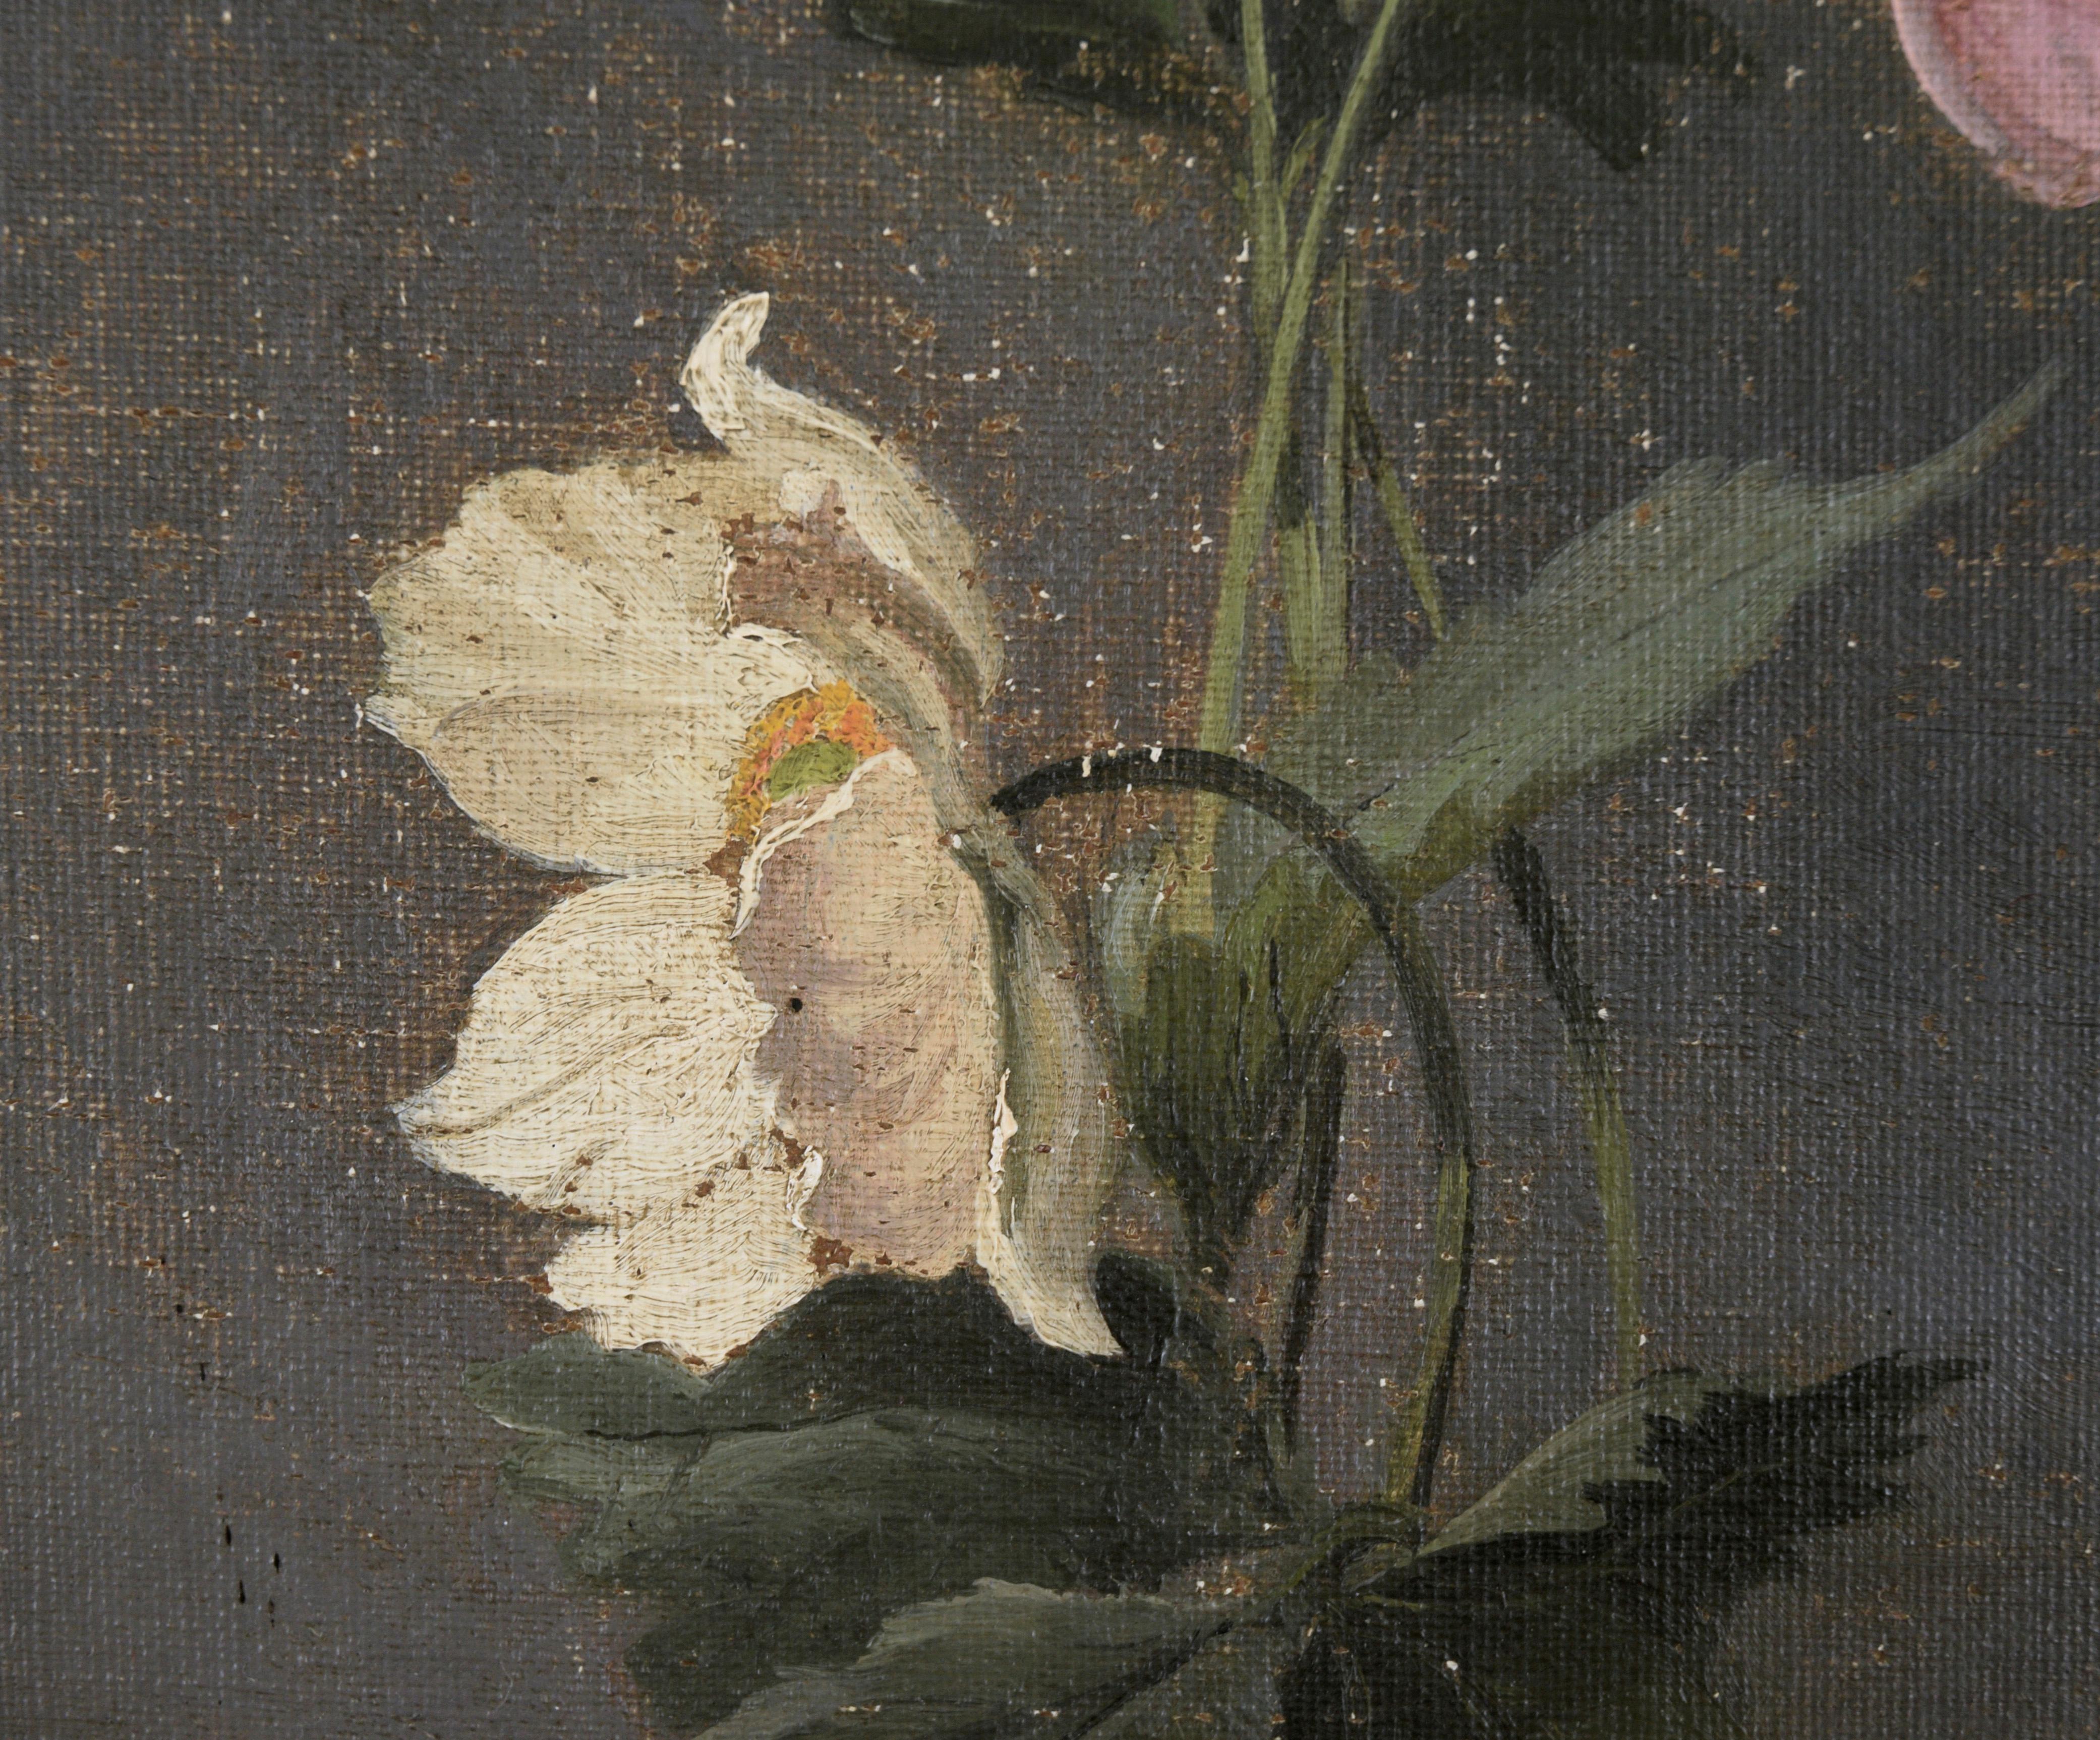 Zartes und detailliertes Blumenstillleben von Alfred Broge (Däne, 1870-1955).  Drei weiße Anemonen und ein rosafarbener Mohn, alle mit Stängeln und Blättern, stehen vor einem mittelgrauen Hintergrund. Sie sind sorgfältig gerendert, mit subtiler